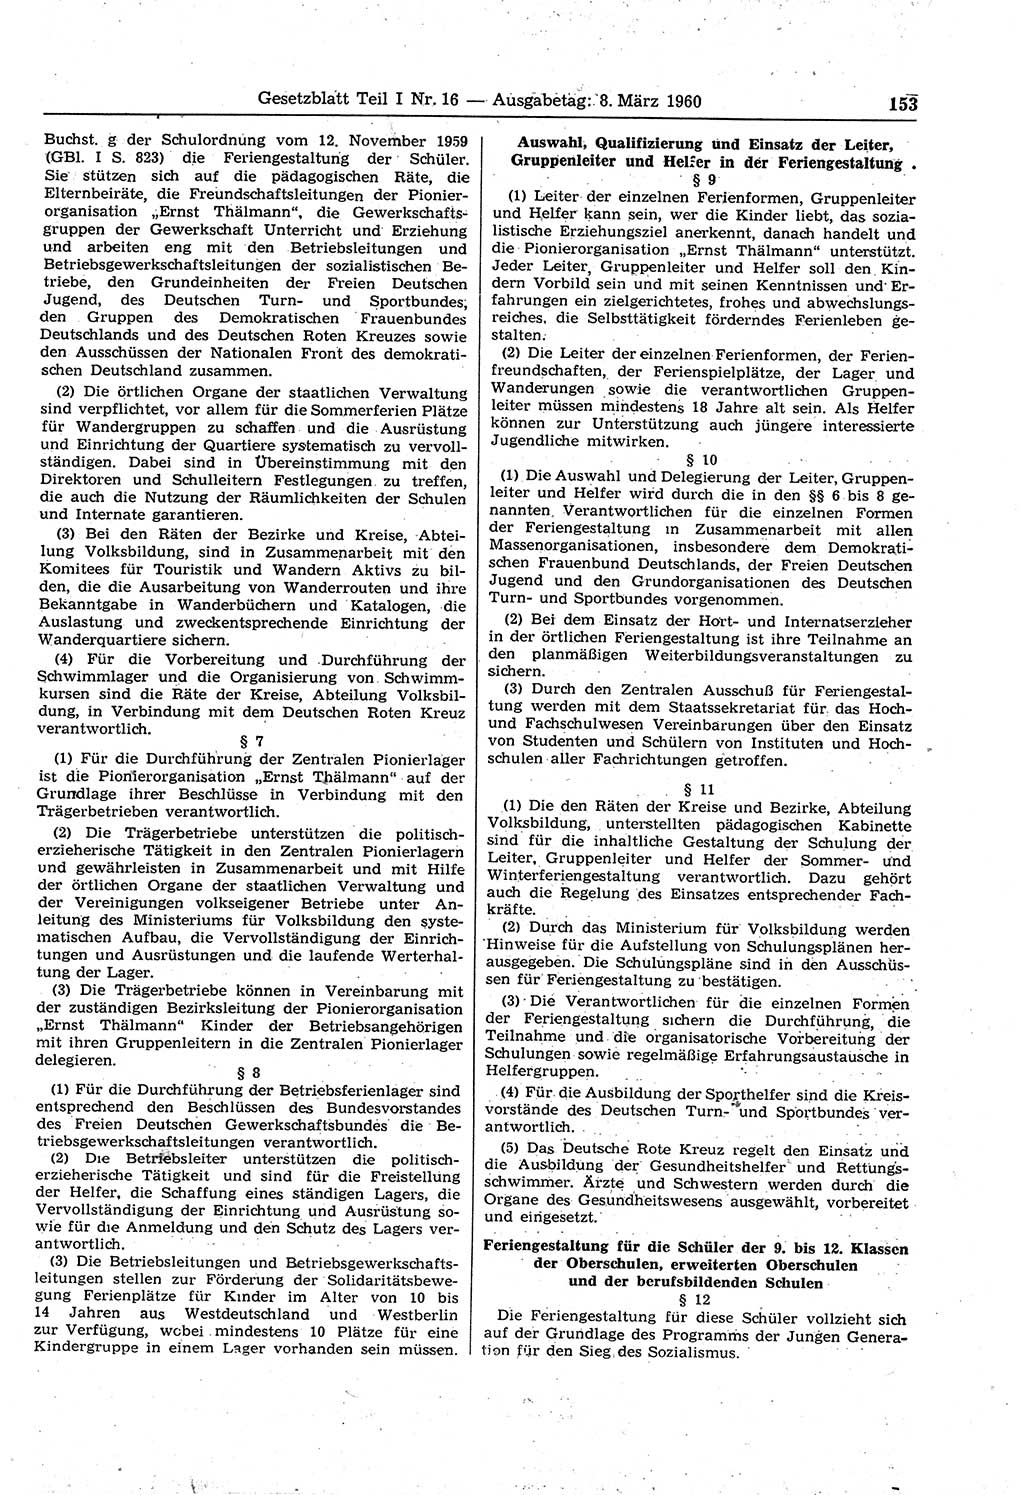 Gesetzblatt (GBl.) der Deutschen Demokratischen Republik (DDR) Teil Ⅰ 1960, Seite 153 (GBl. DDR Ⅰ 1960, S. 153)